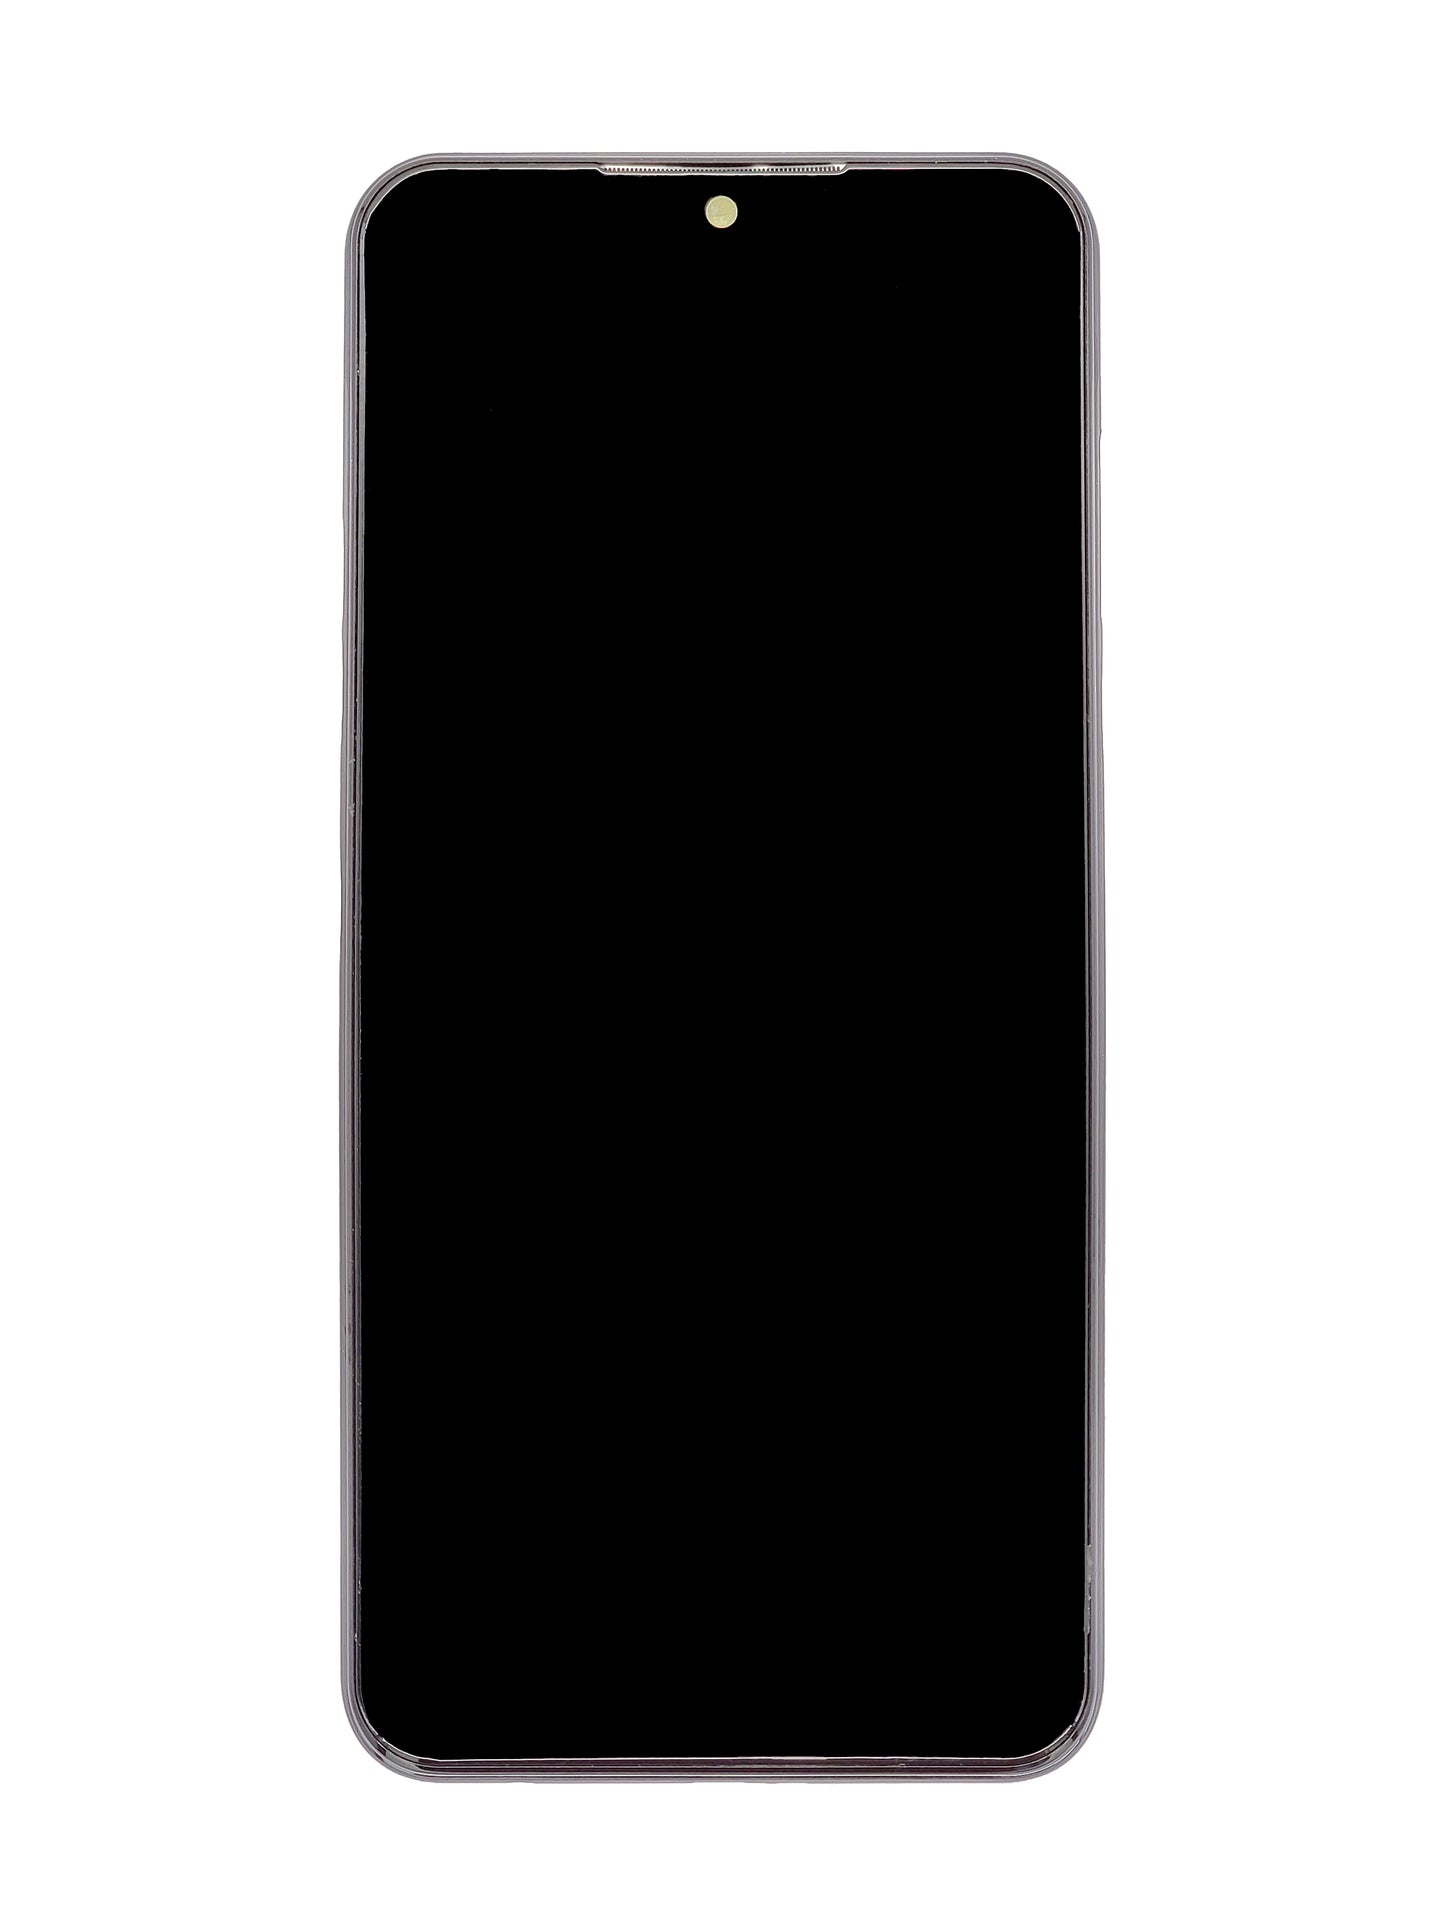 LGK K51 2020 (K500) Screen Assembly (With The Frame) (Refurbished) (Black)